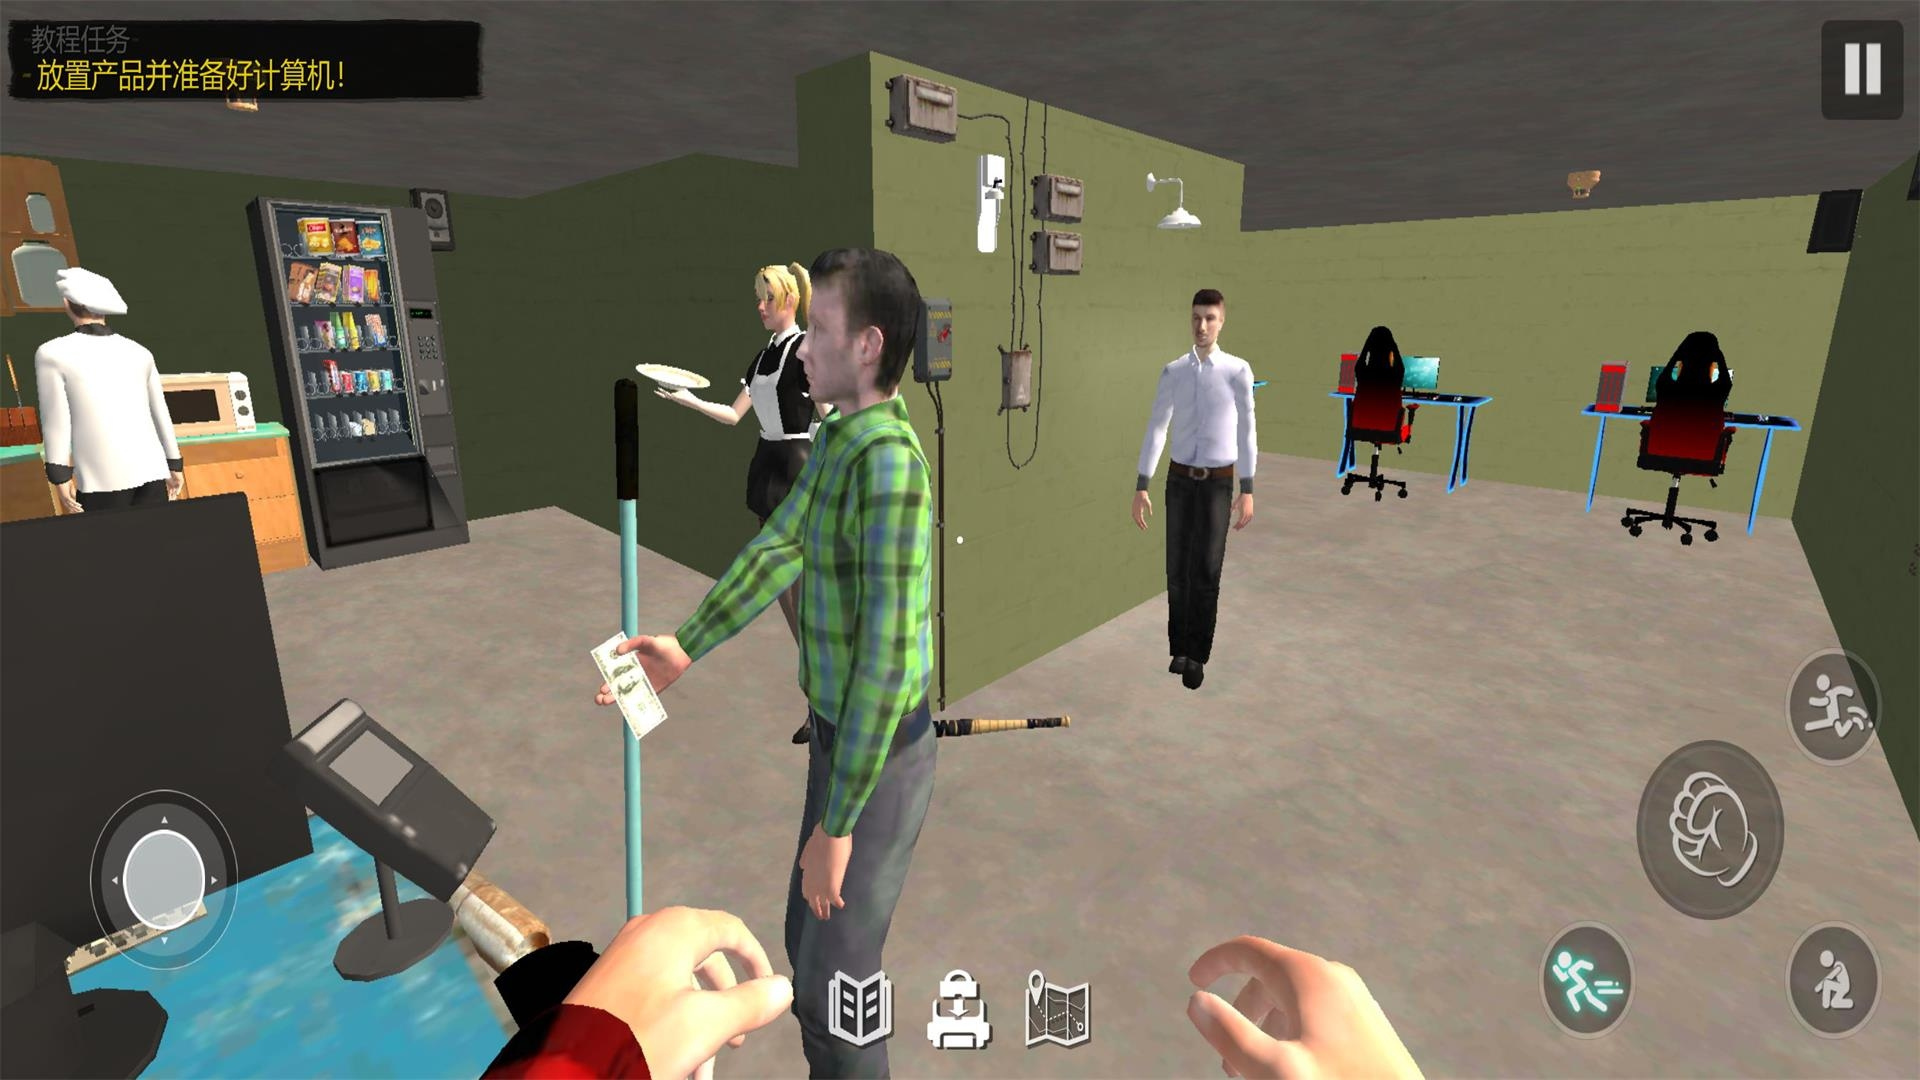 网吧之夜模拟器游戏下载安装图片1